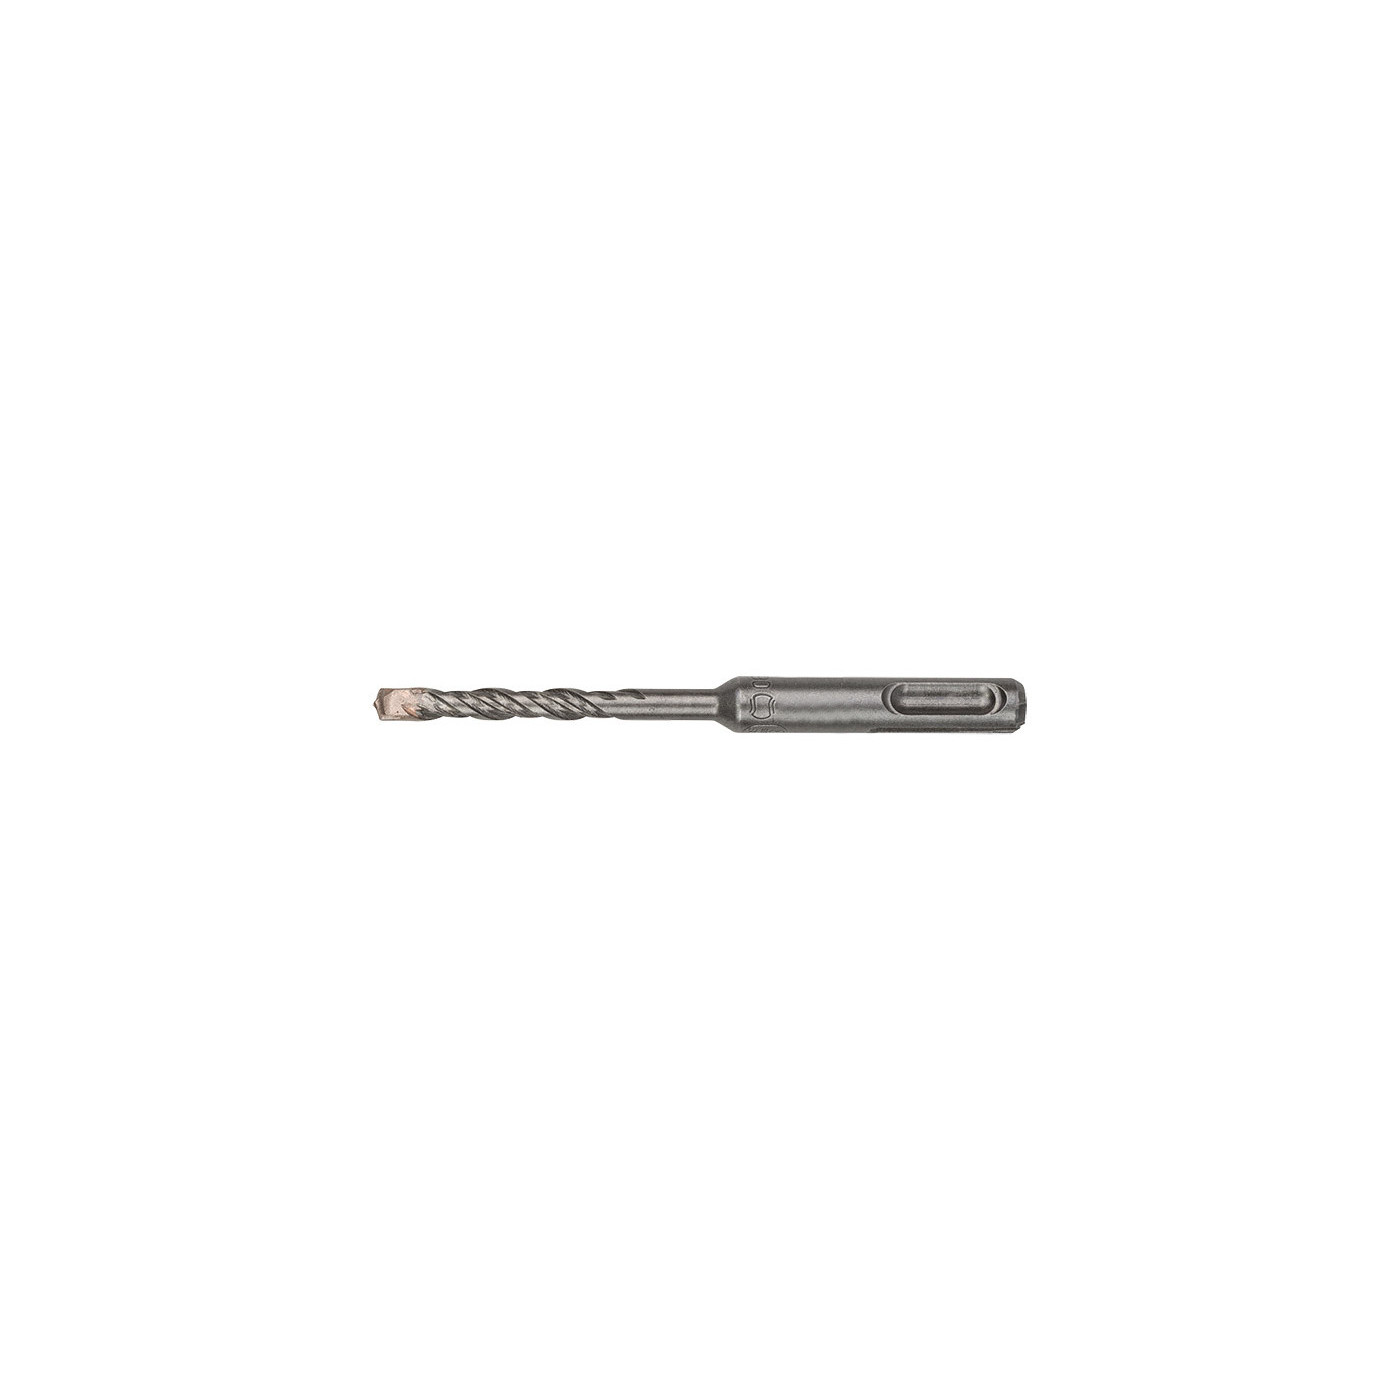 SDS PLUS hammer drill bit (12x160 mm)